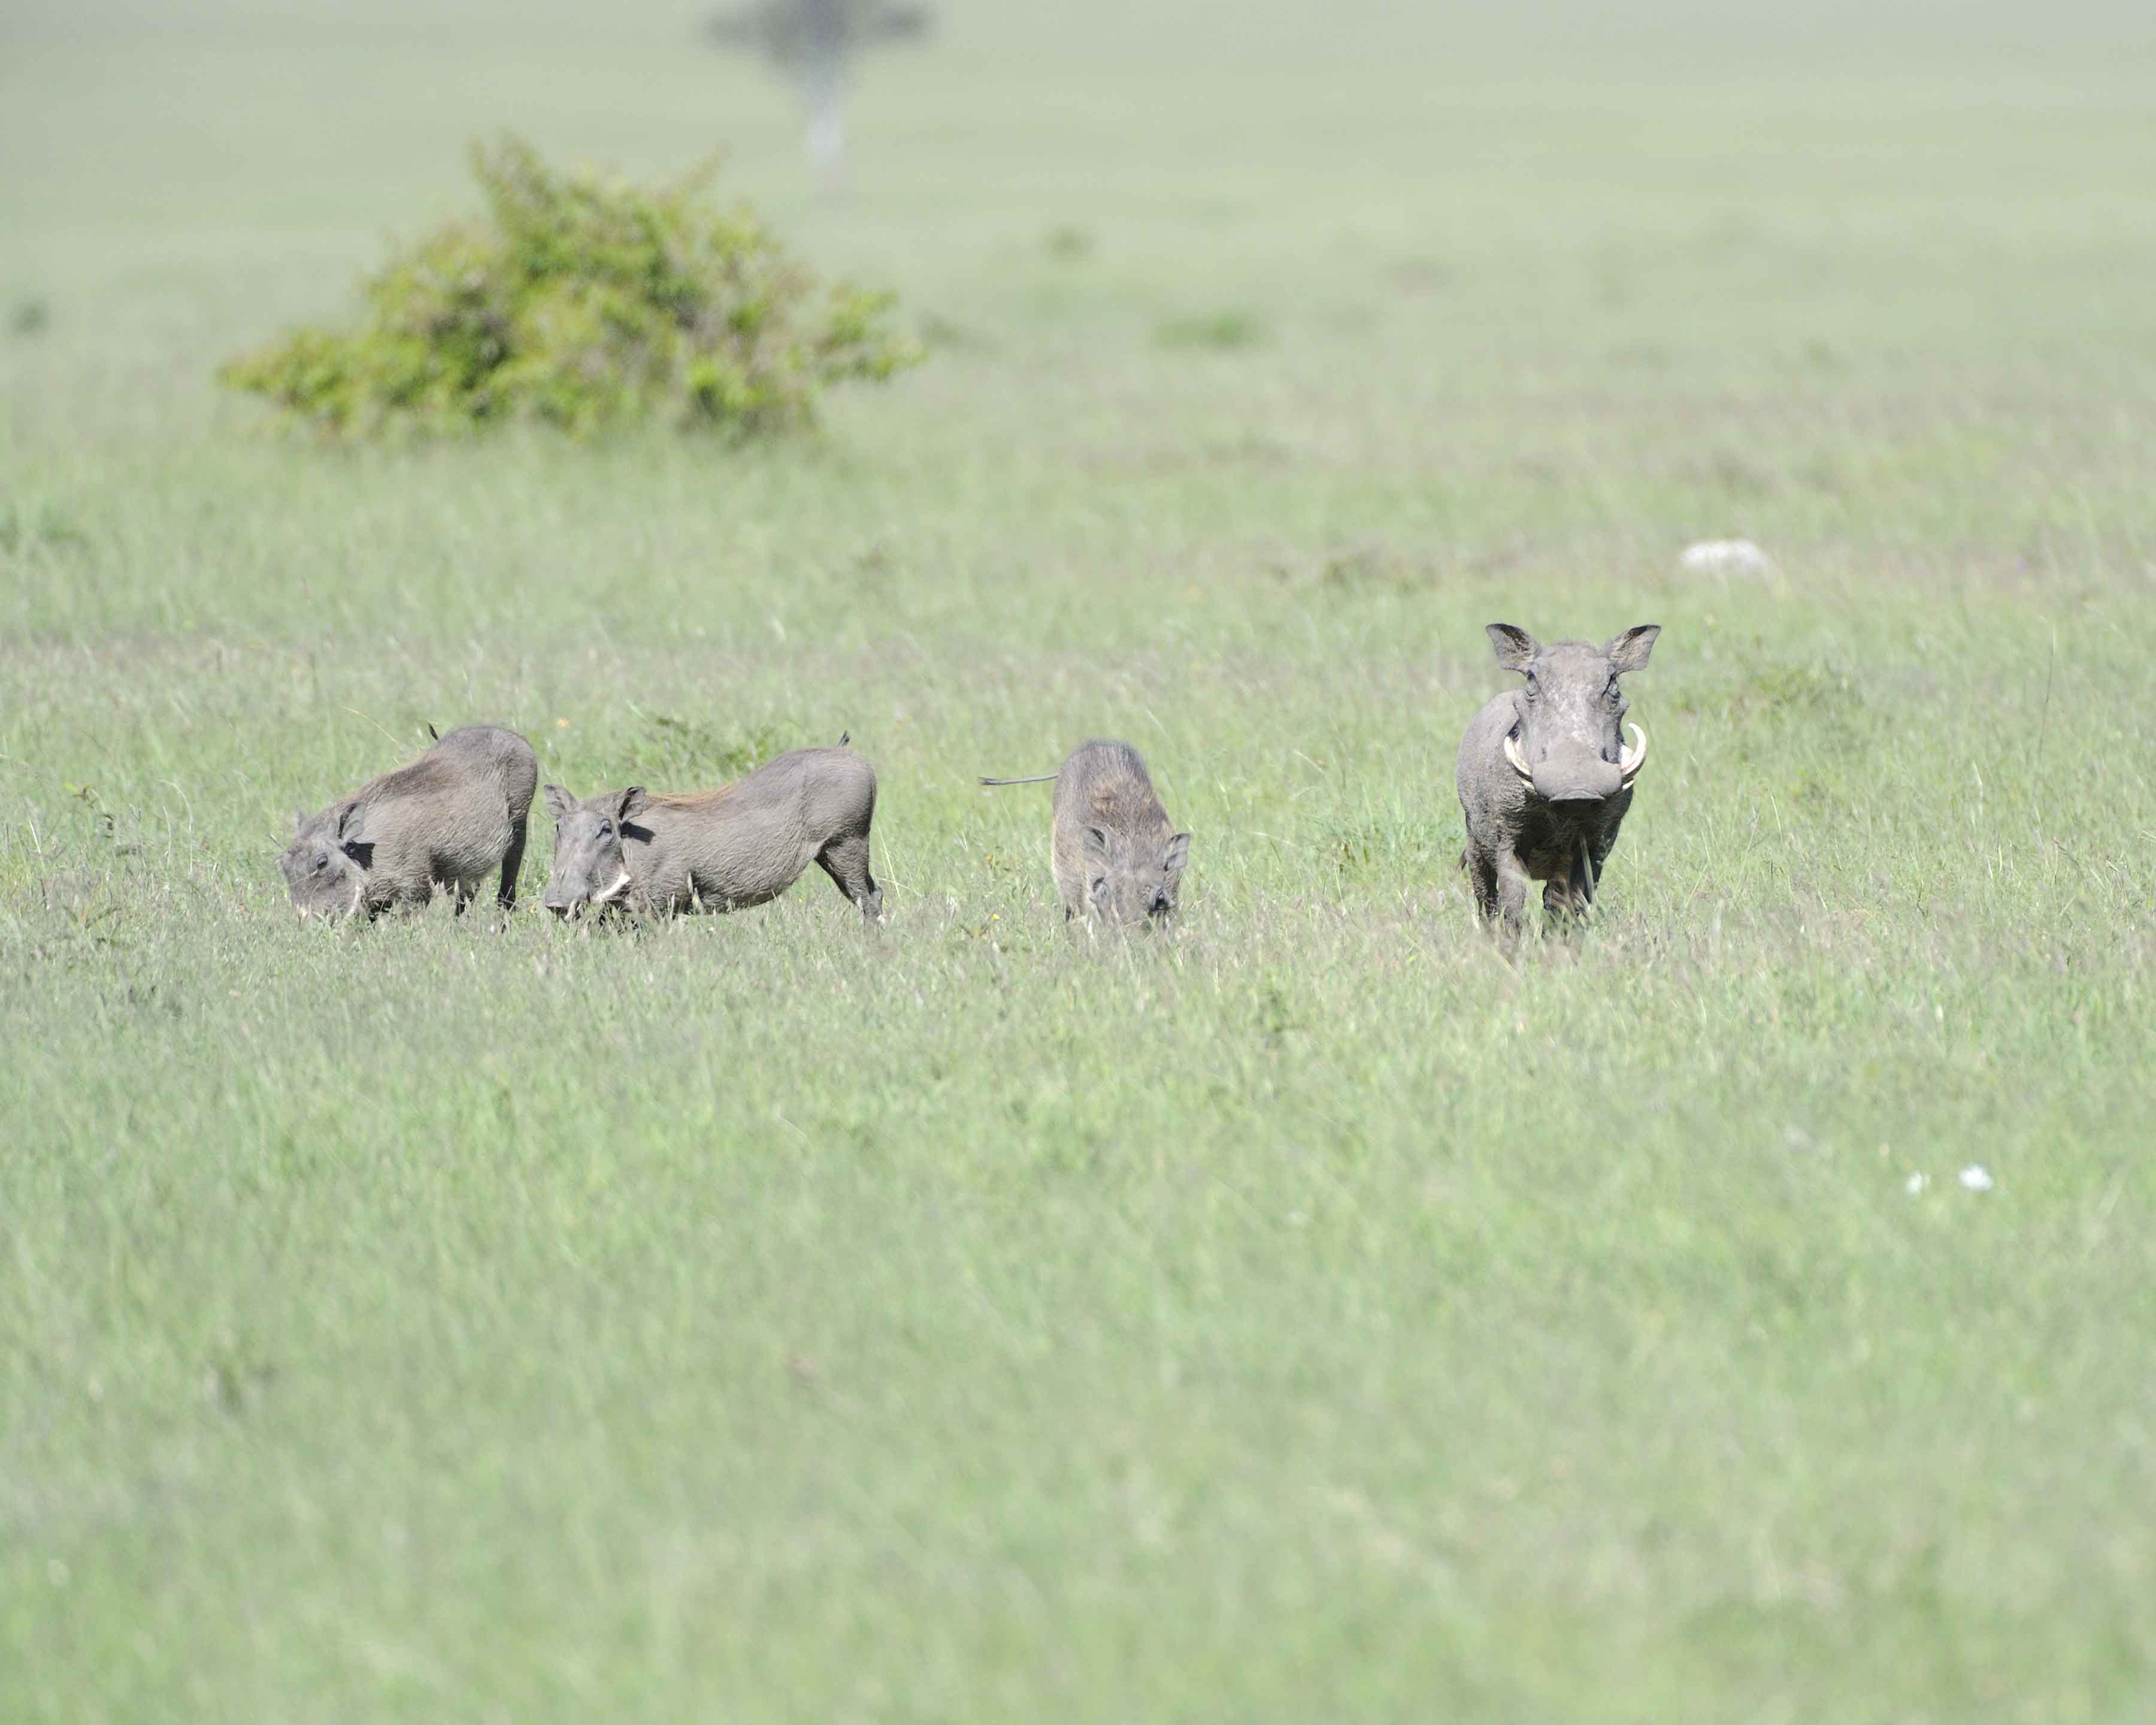 Warthog-011313-Maasai Mara National Reserve, Kenya-#2368.jpg